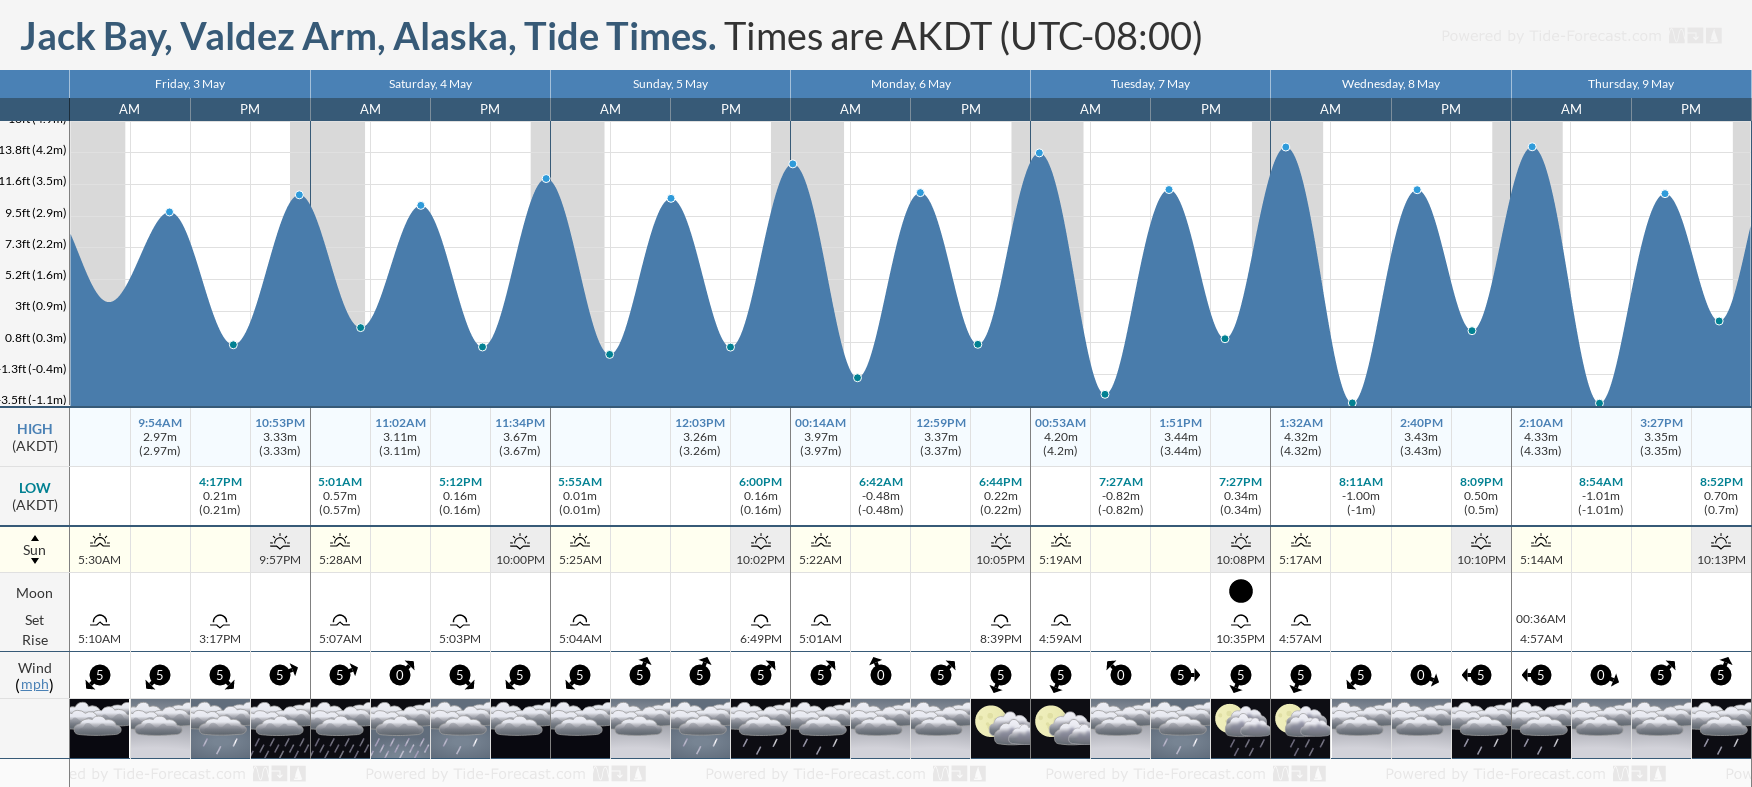 Jack Bay, Valdez Arm, Alaska Tide Chart including high and low tide tide times for the next 7 days